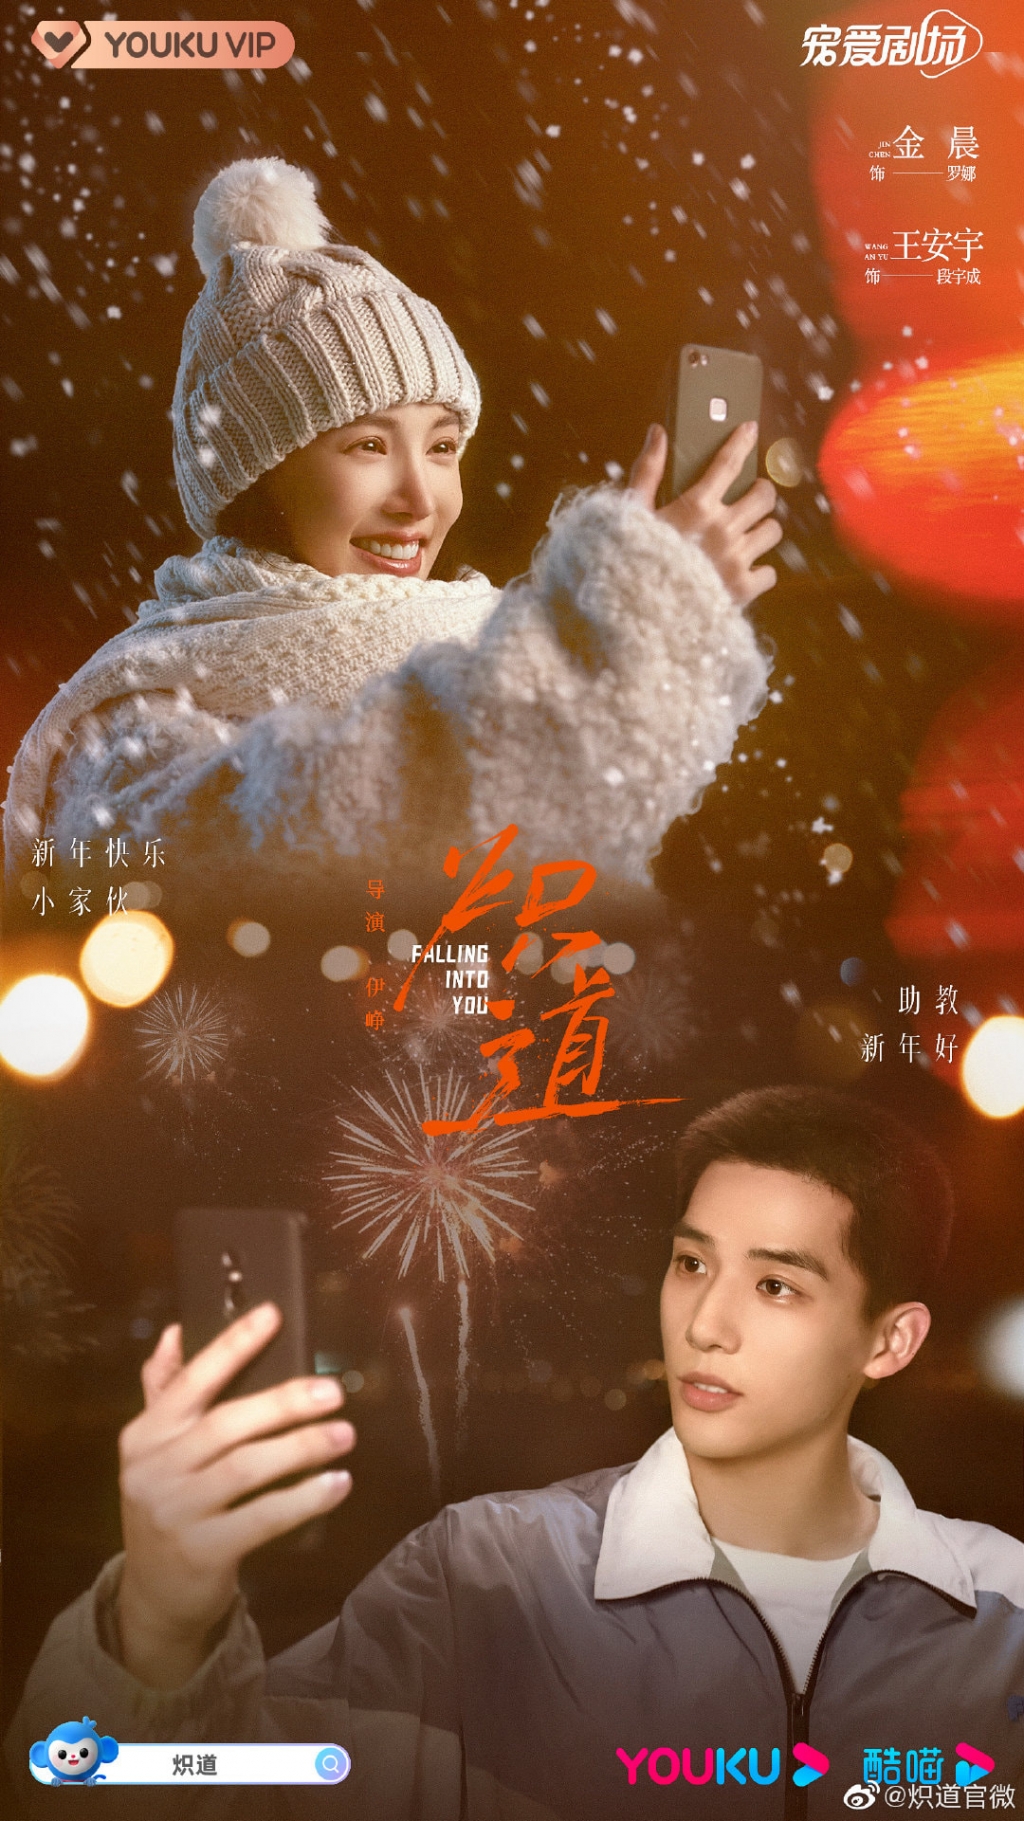 'Chiếc bật lửa và váy công chúa' có điểm Douban cao chót vót trong các phim hiện đại 2022